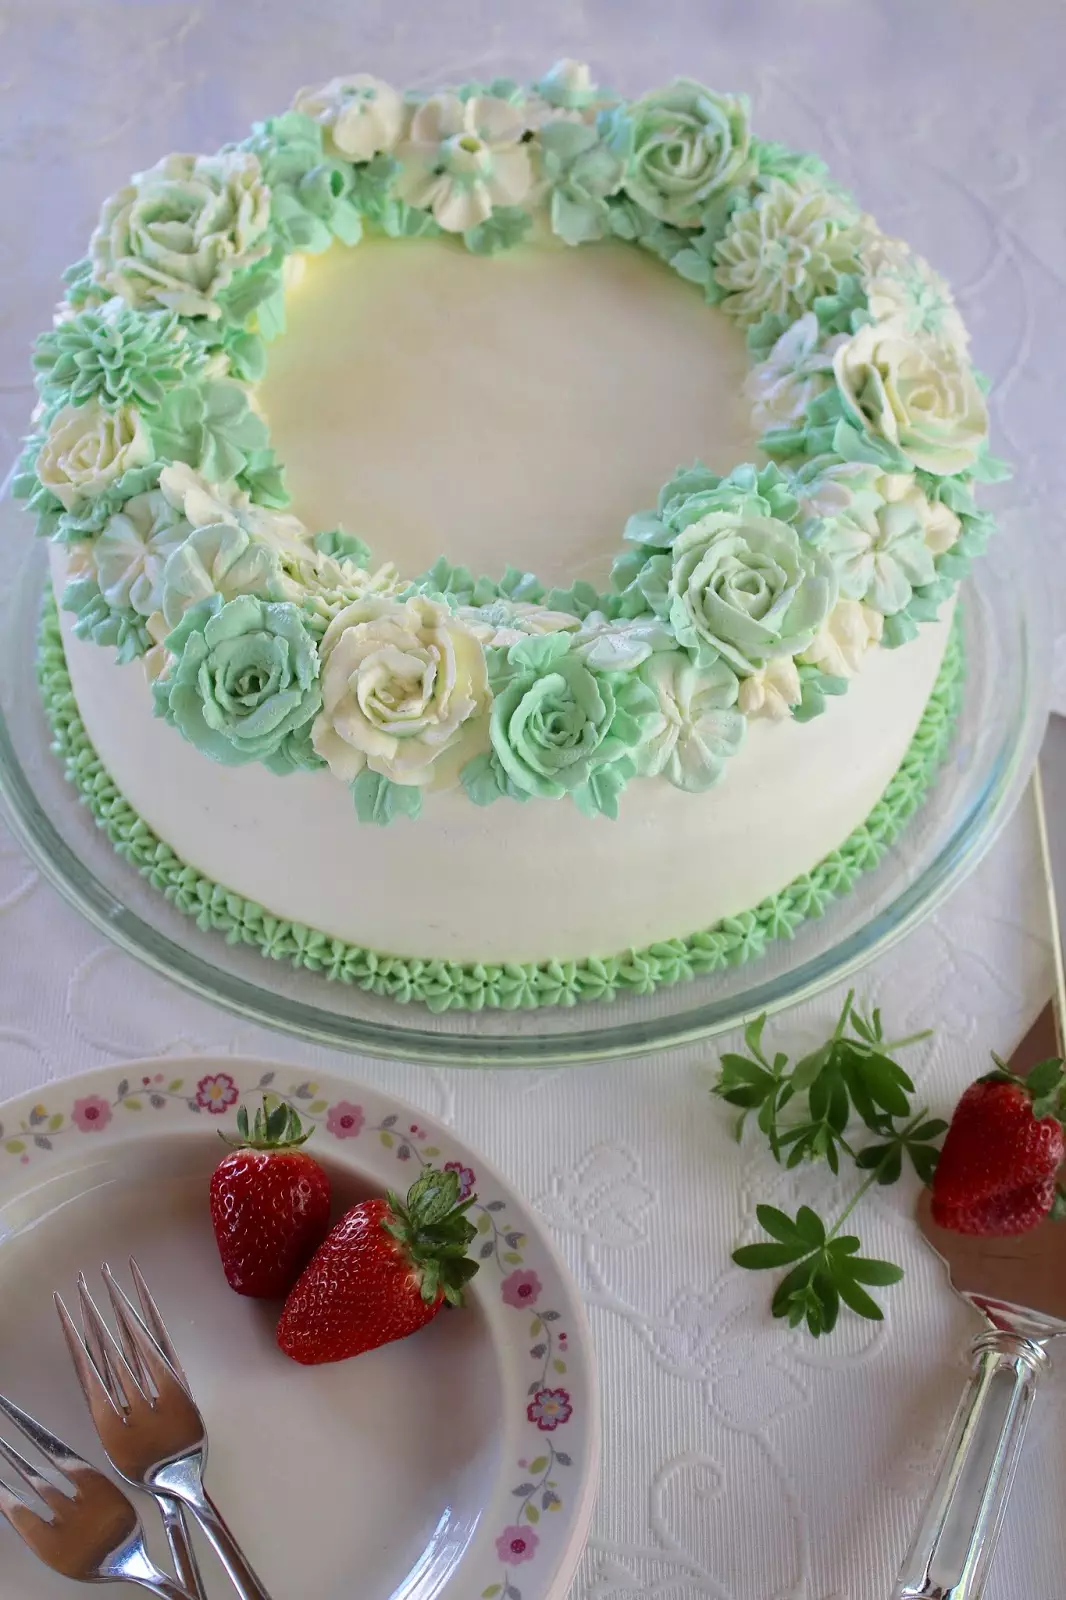 Tolles Rezept für eine Erdbeer-Waldmeister-Torte mit Blütenkranz aus Buttercreme: Frühlings-Blog-Hop in Grün!